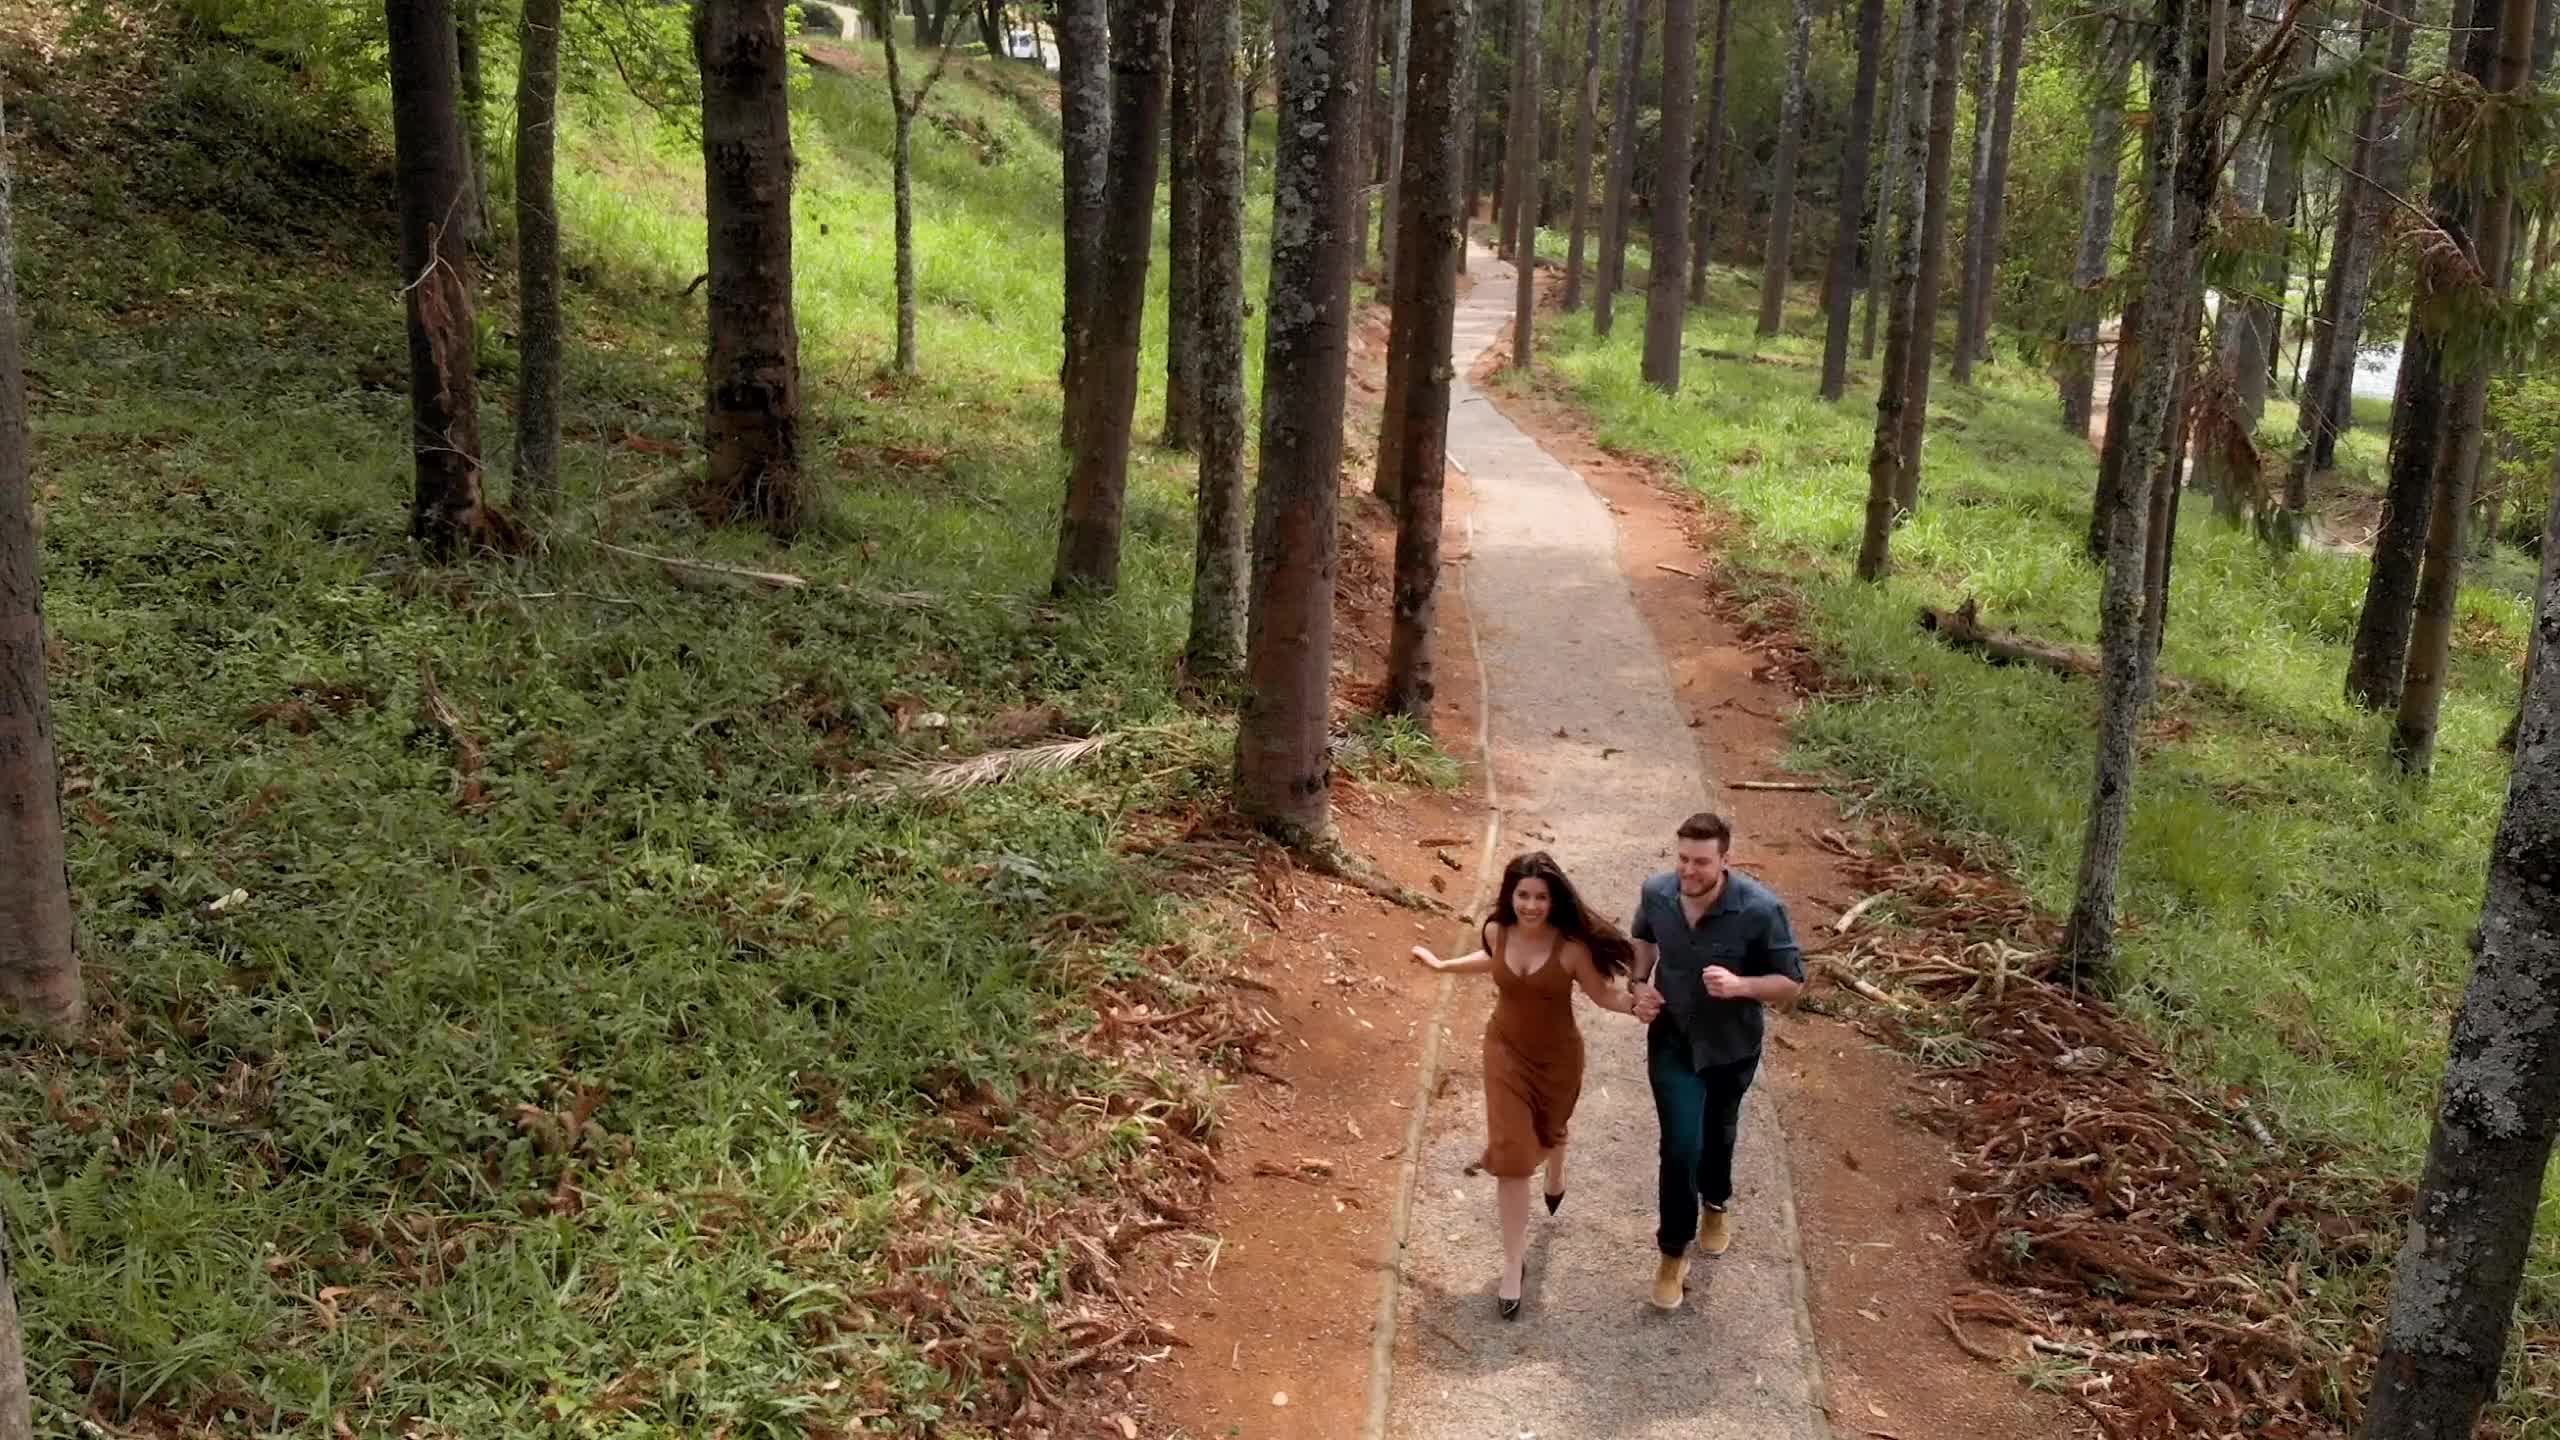 夫妻一起奔跑在森林小路上